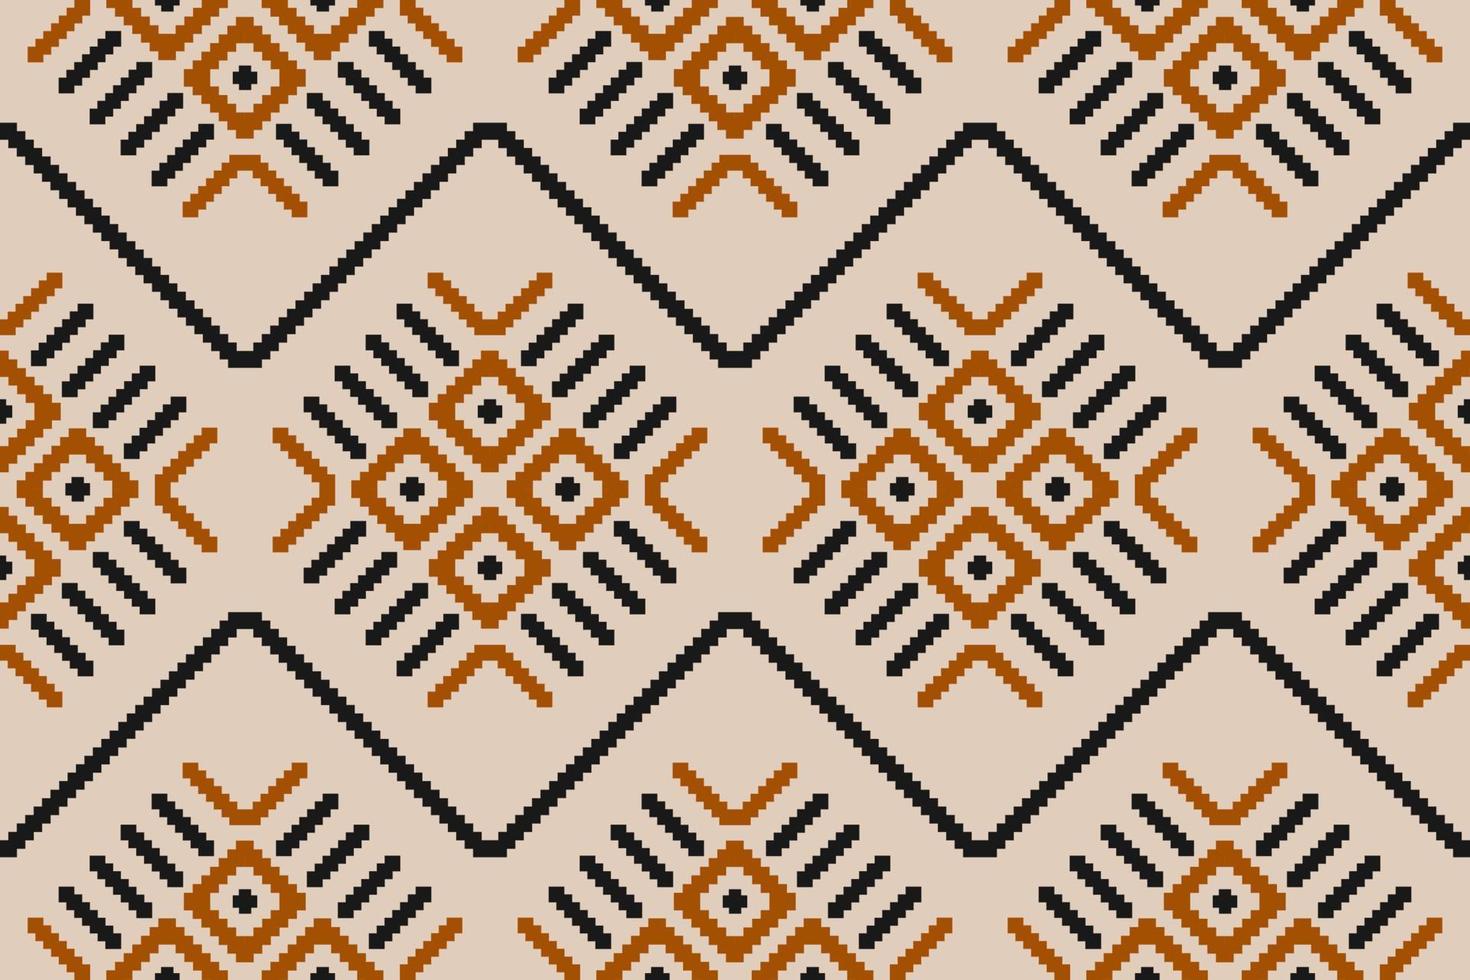 tissu ethnique motif oriental. modèle sans couture ikat ethnique en tribal. vecteur